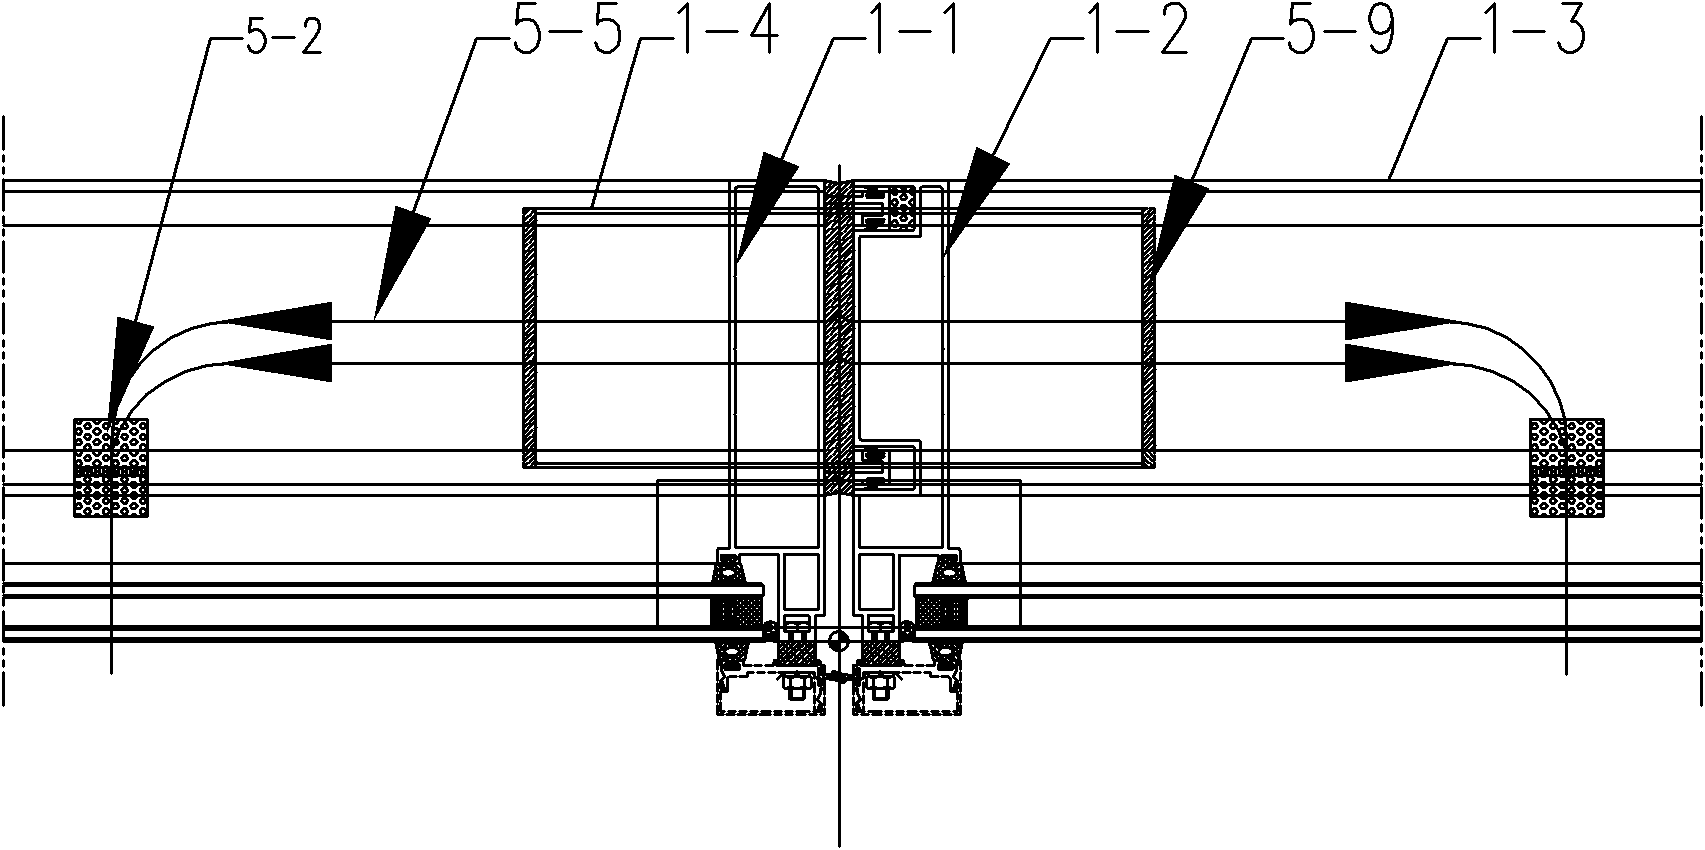 Z-shaped window unit body